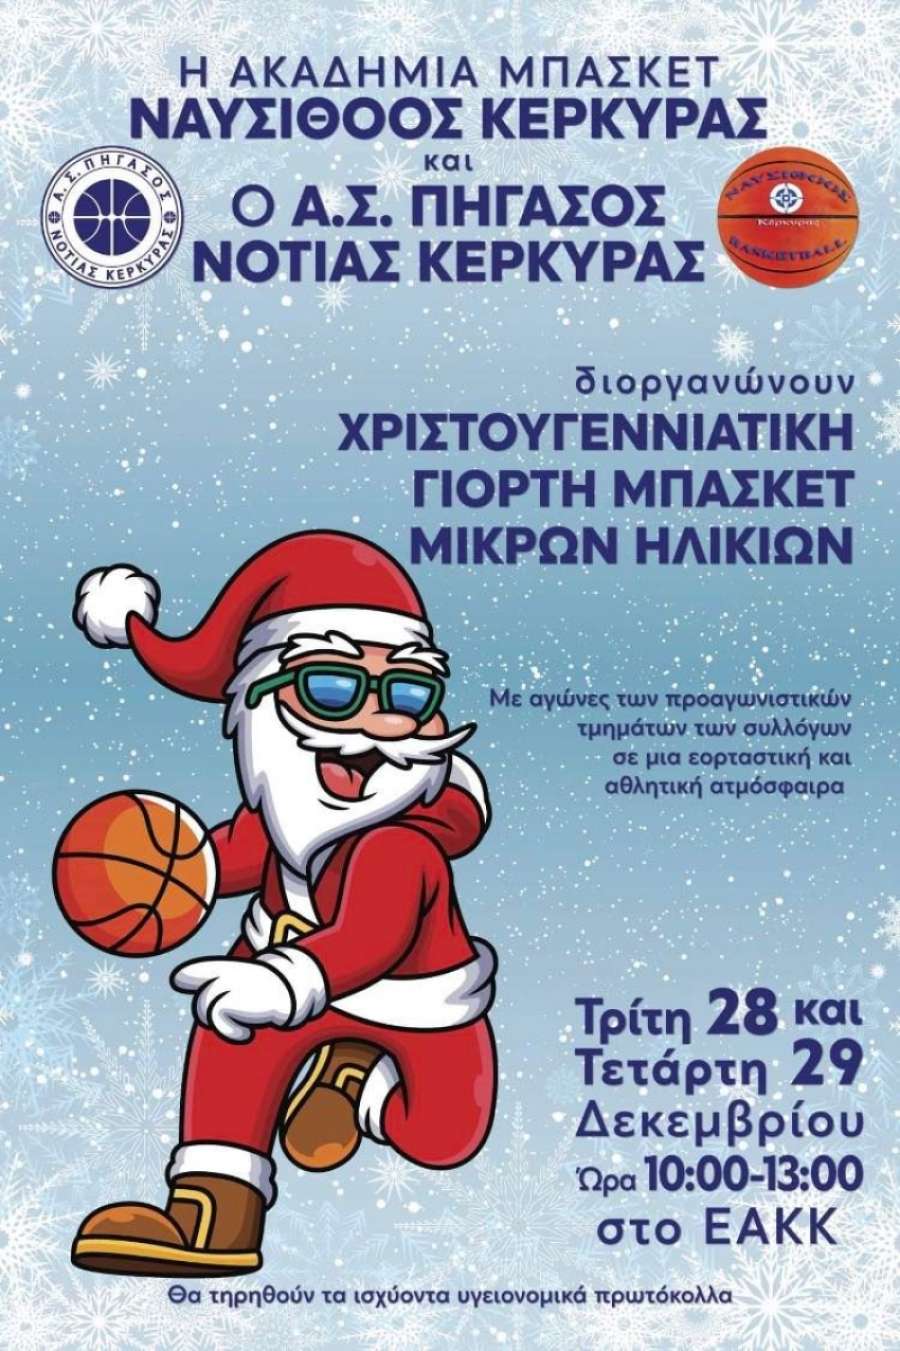 Εορταστικοί αγώνες των προαγωνιστικών τμημάτων Ναυσίθοου και Πήγασου Νότιας Κέρκυρας